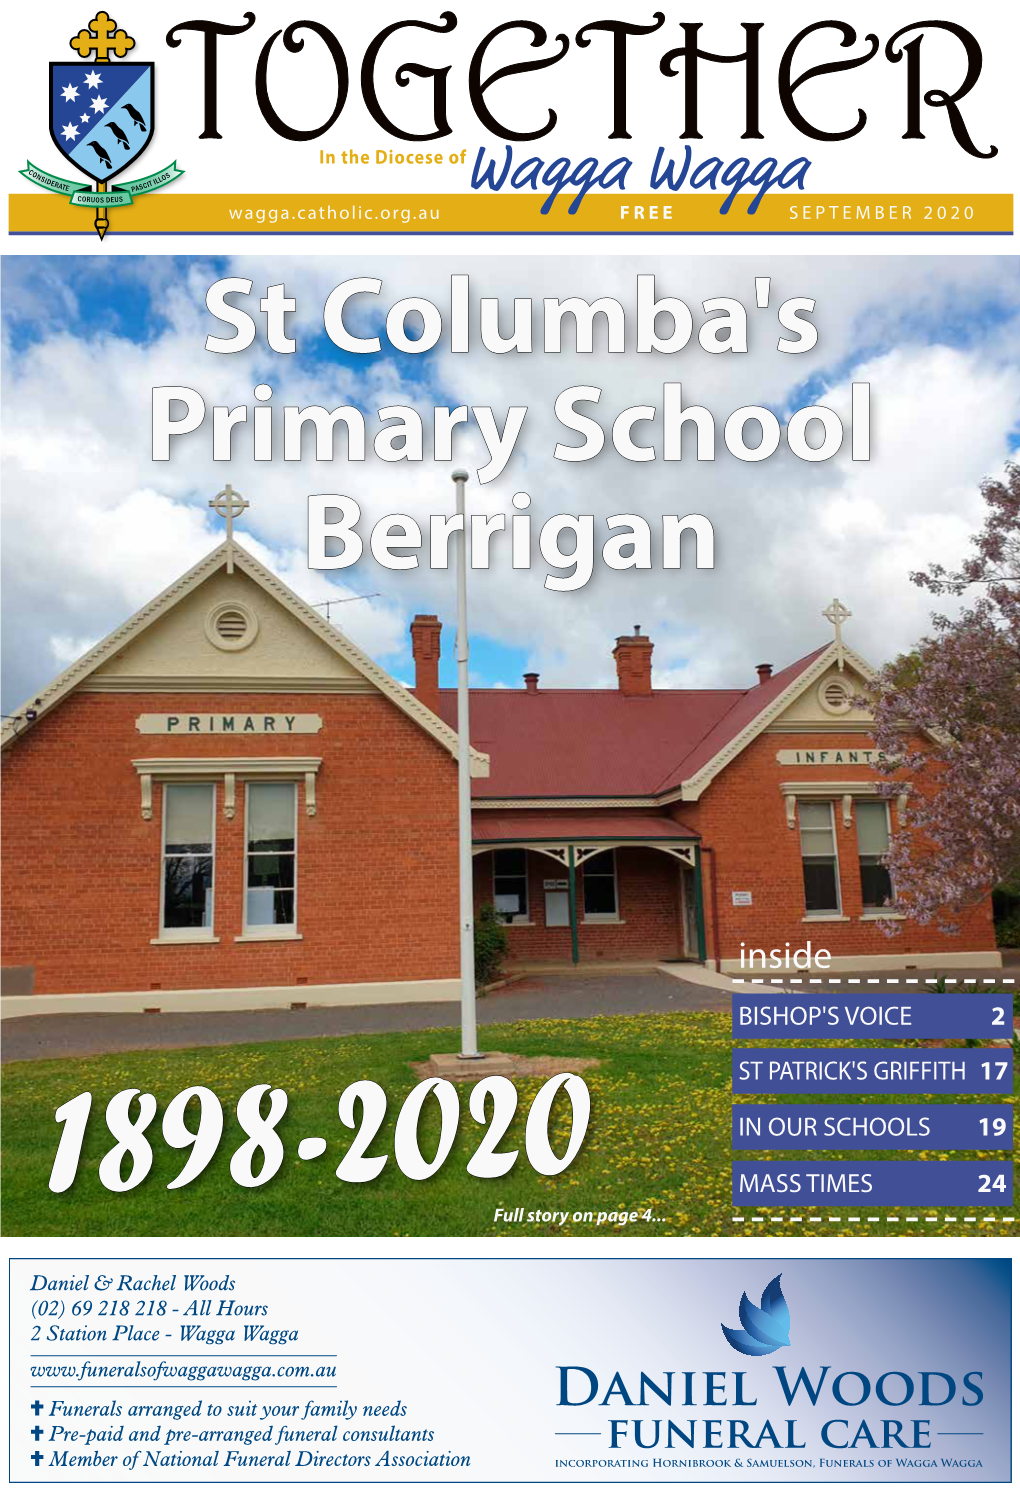 St Columba's Primary School Berrigan